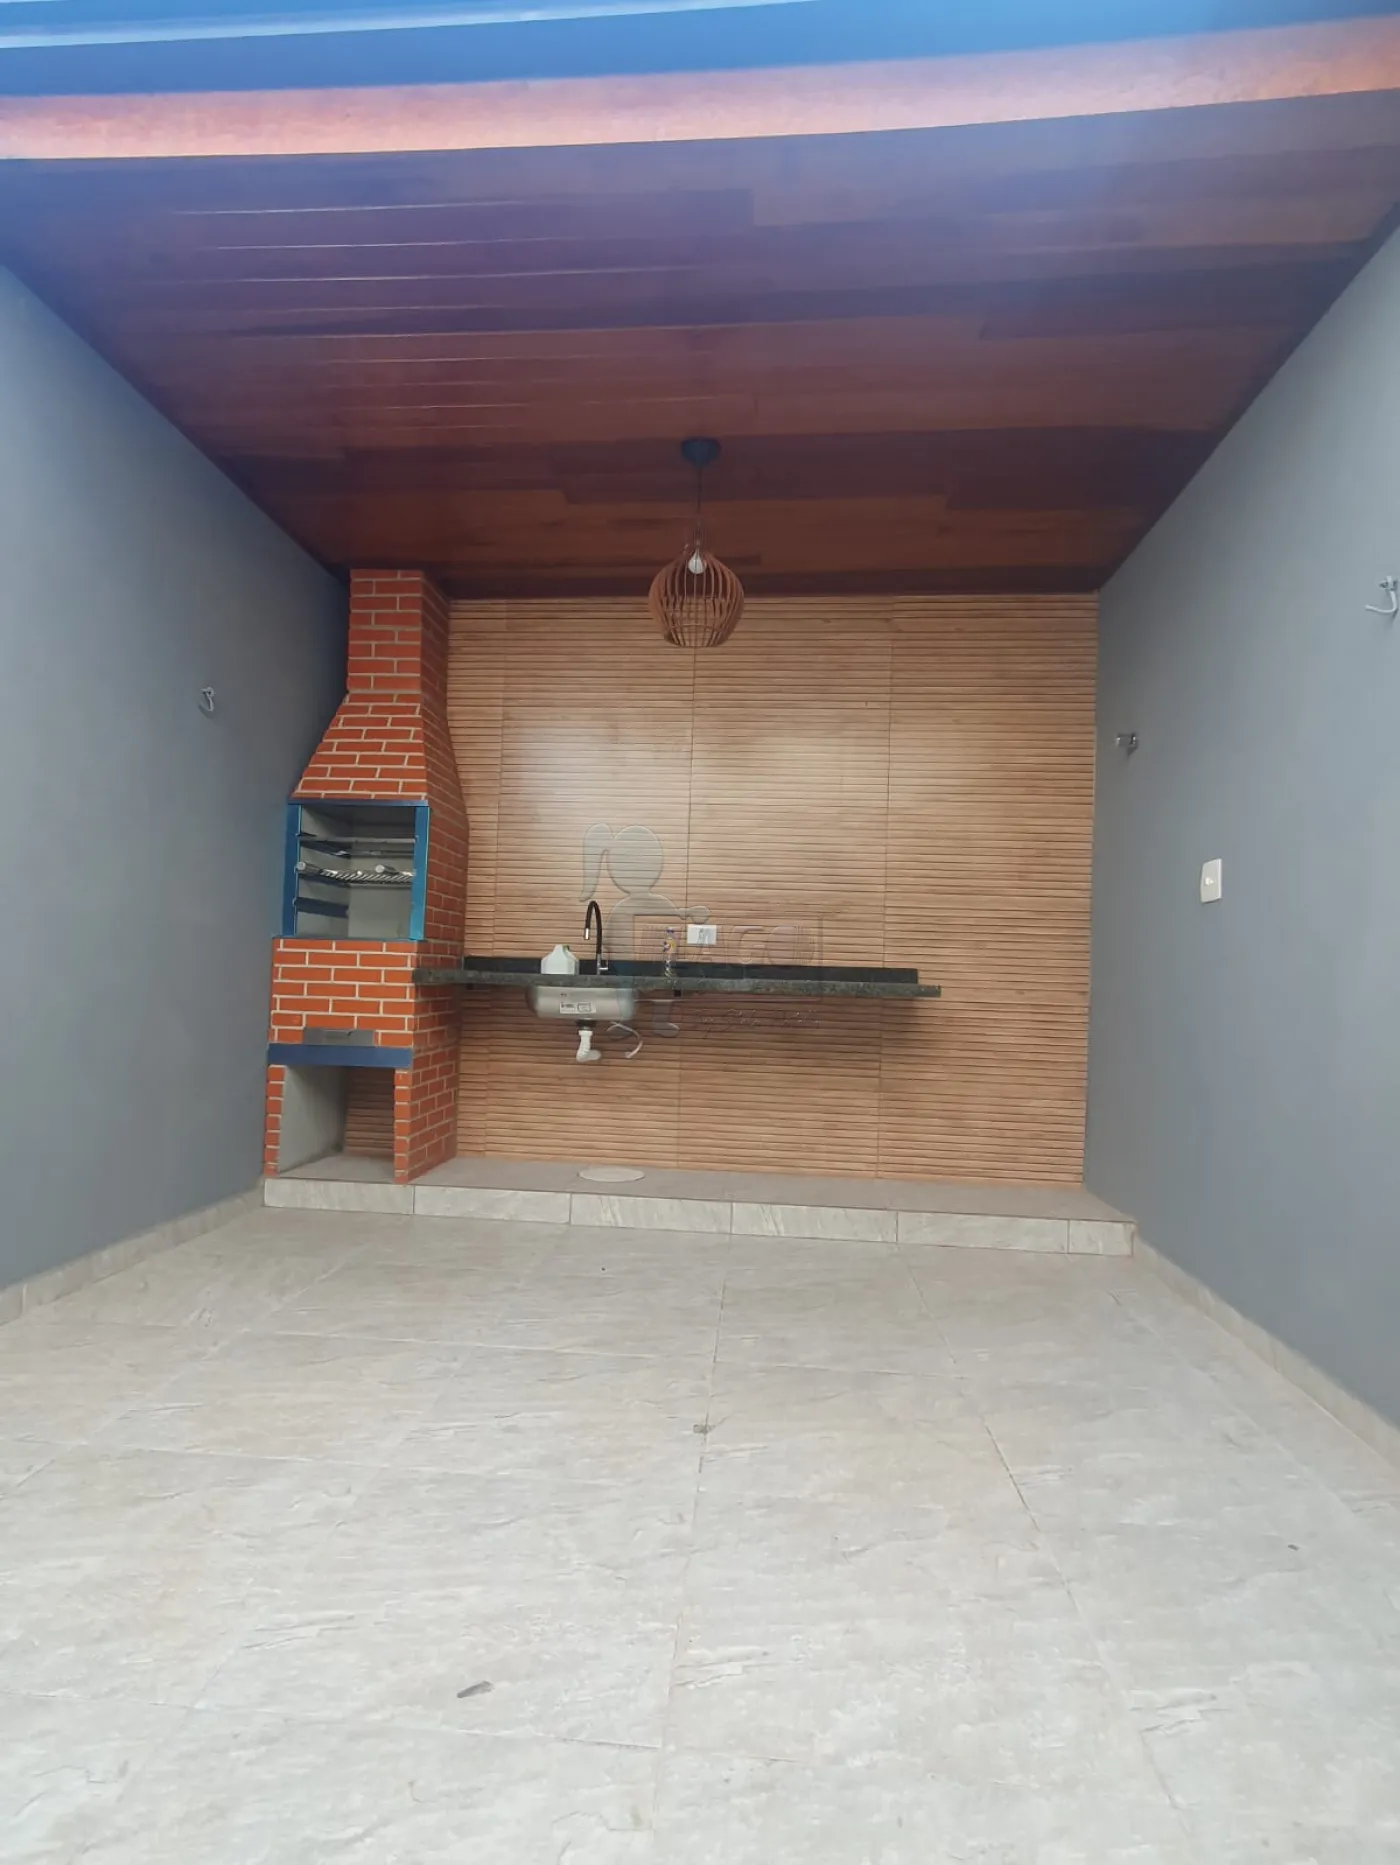 Comprar Casas / Padrão em Ribeirão Preto R$ 370.000,00 - Foto 9